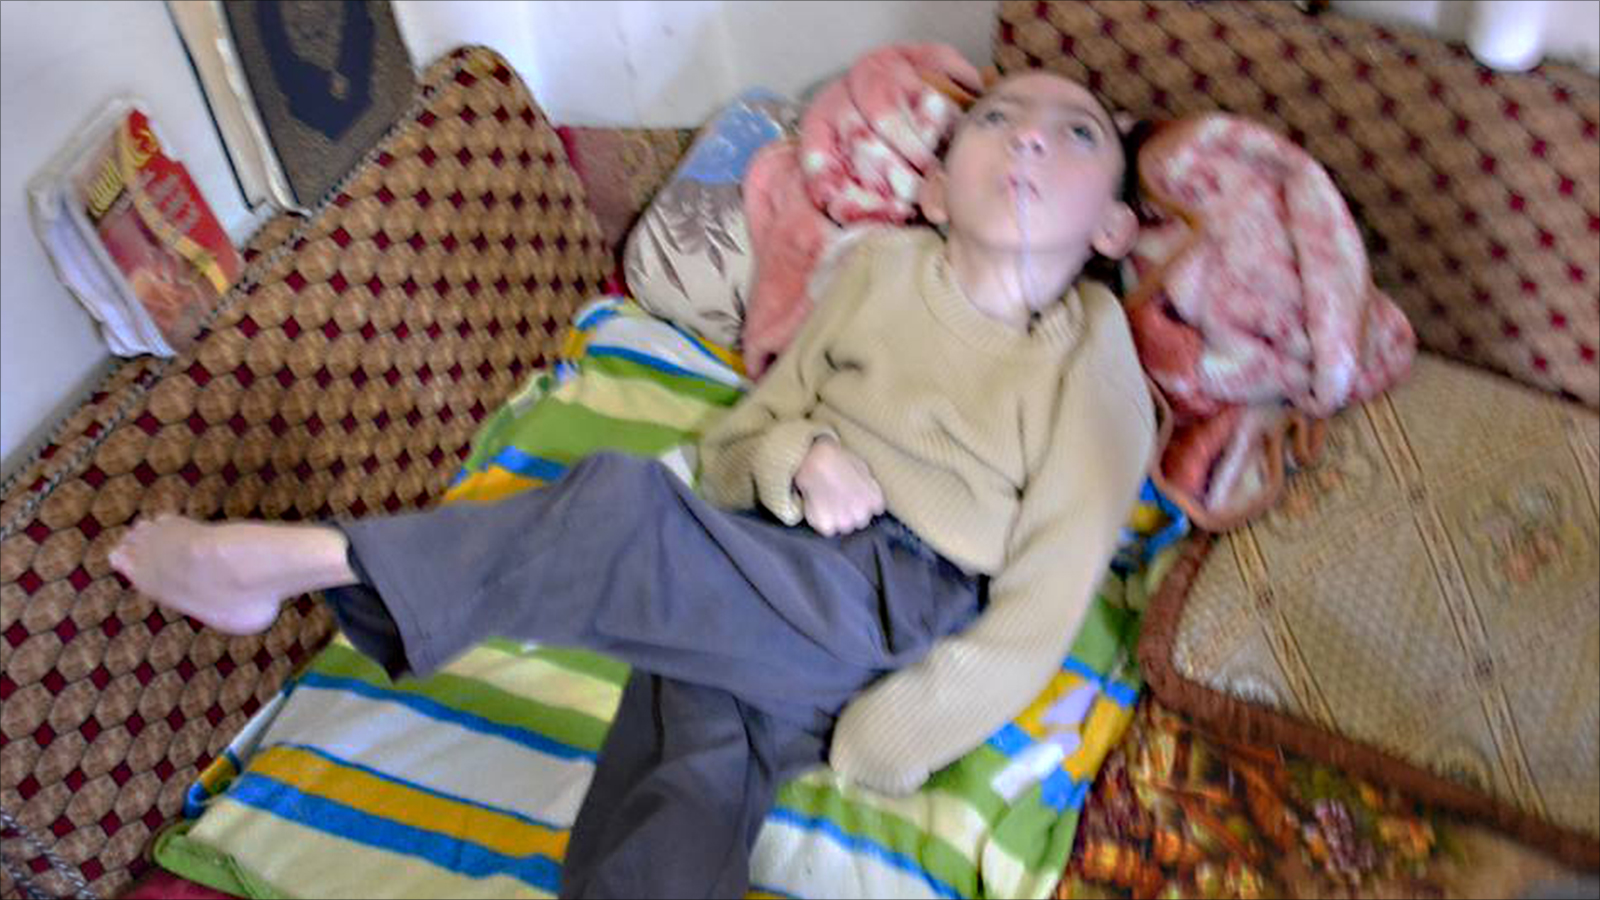 عبد الإله طفل توقف عن الحركة والنطق والقدرة على تناول الطعام بسبب انعدام الرعاية الطبية (الجزيرة نت)